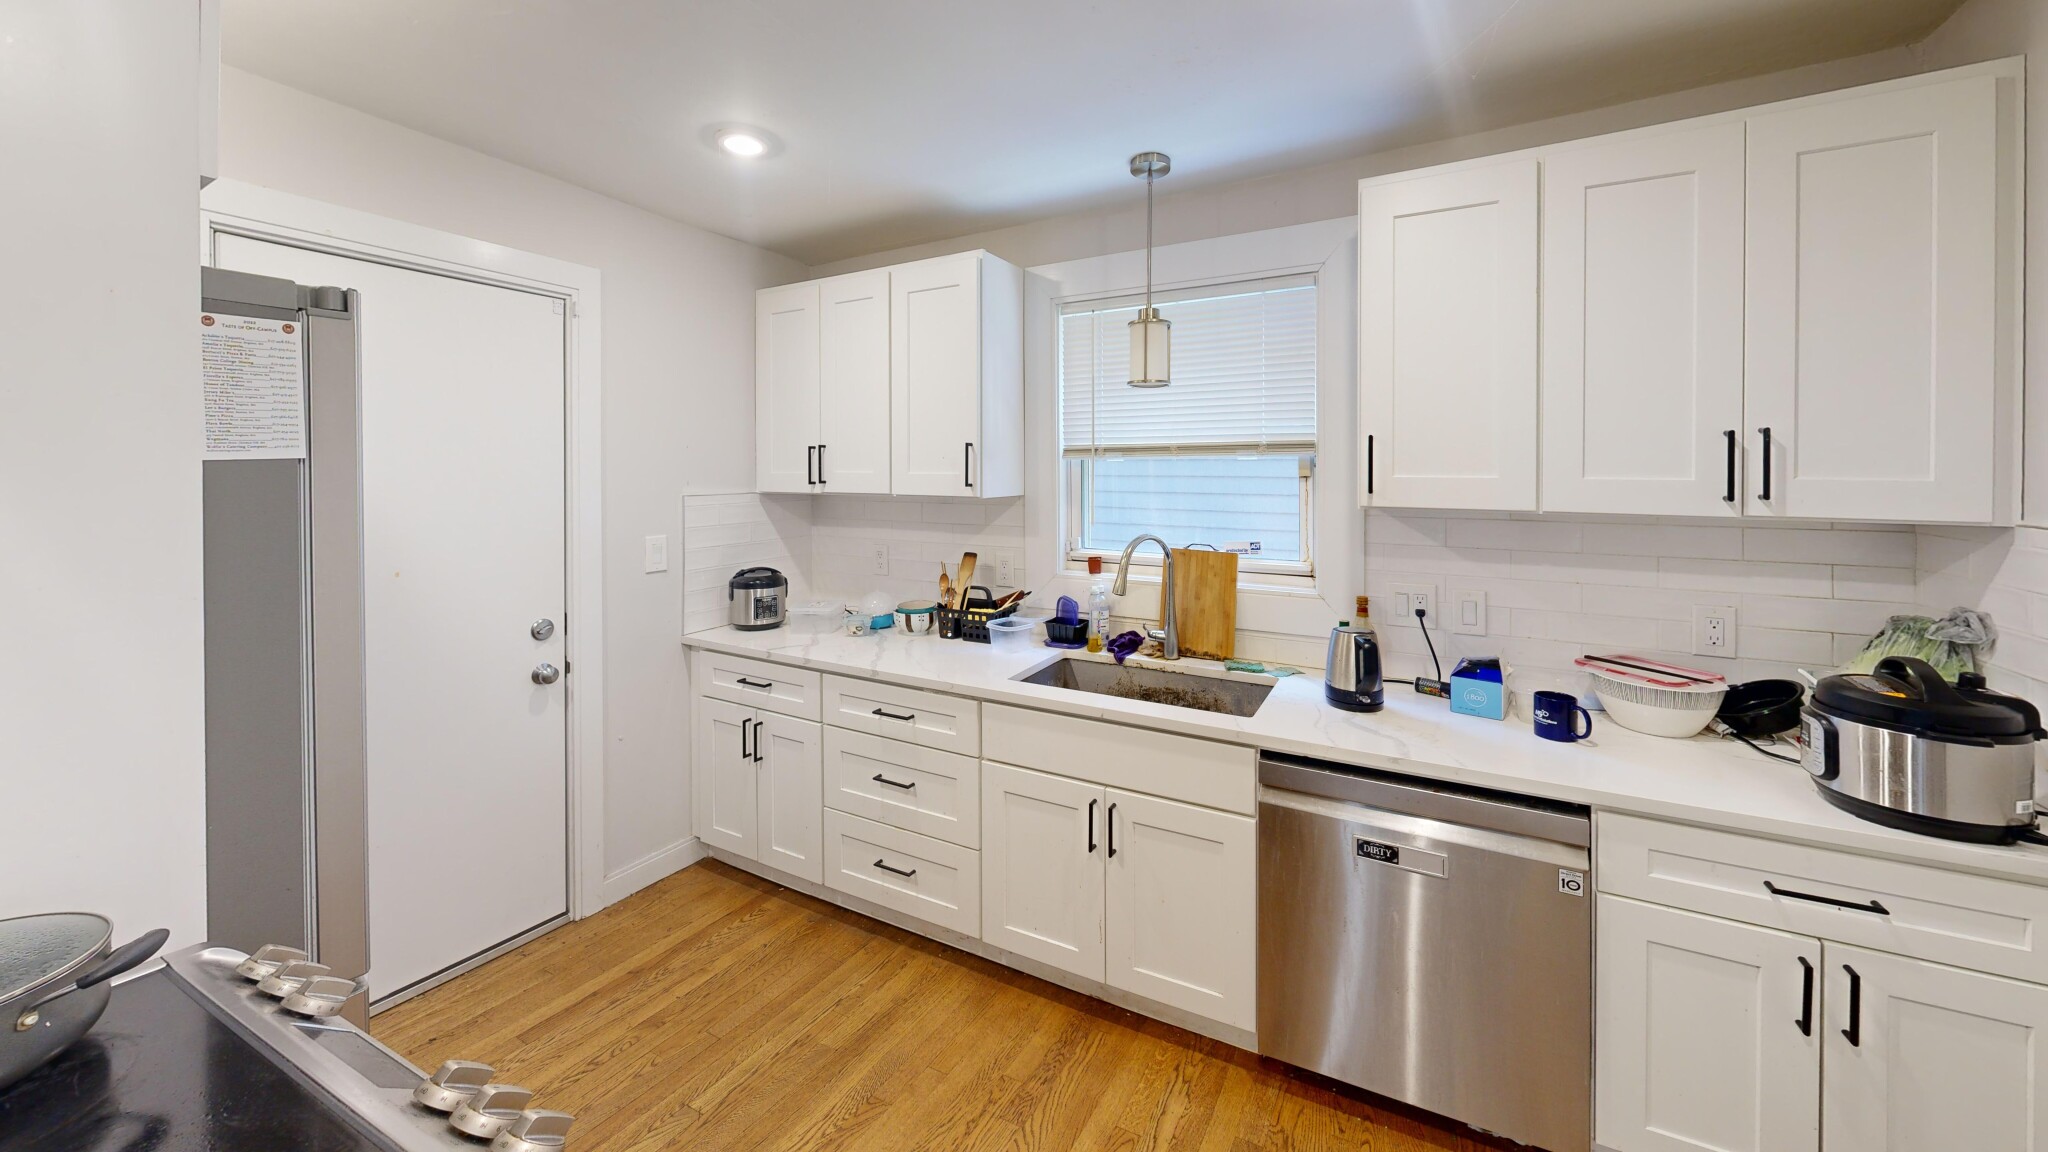 Photos of apartment on Dighton,Boston MA 02135